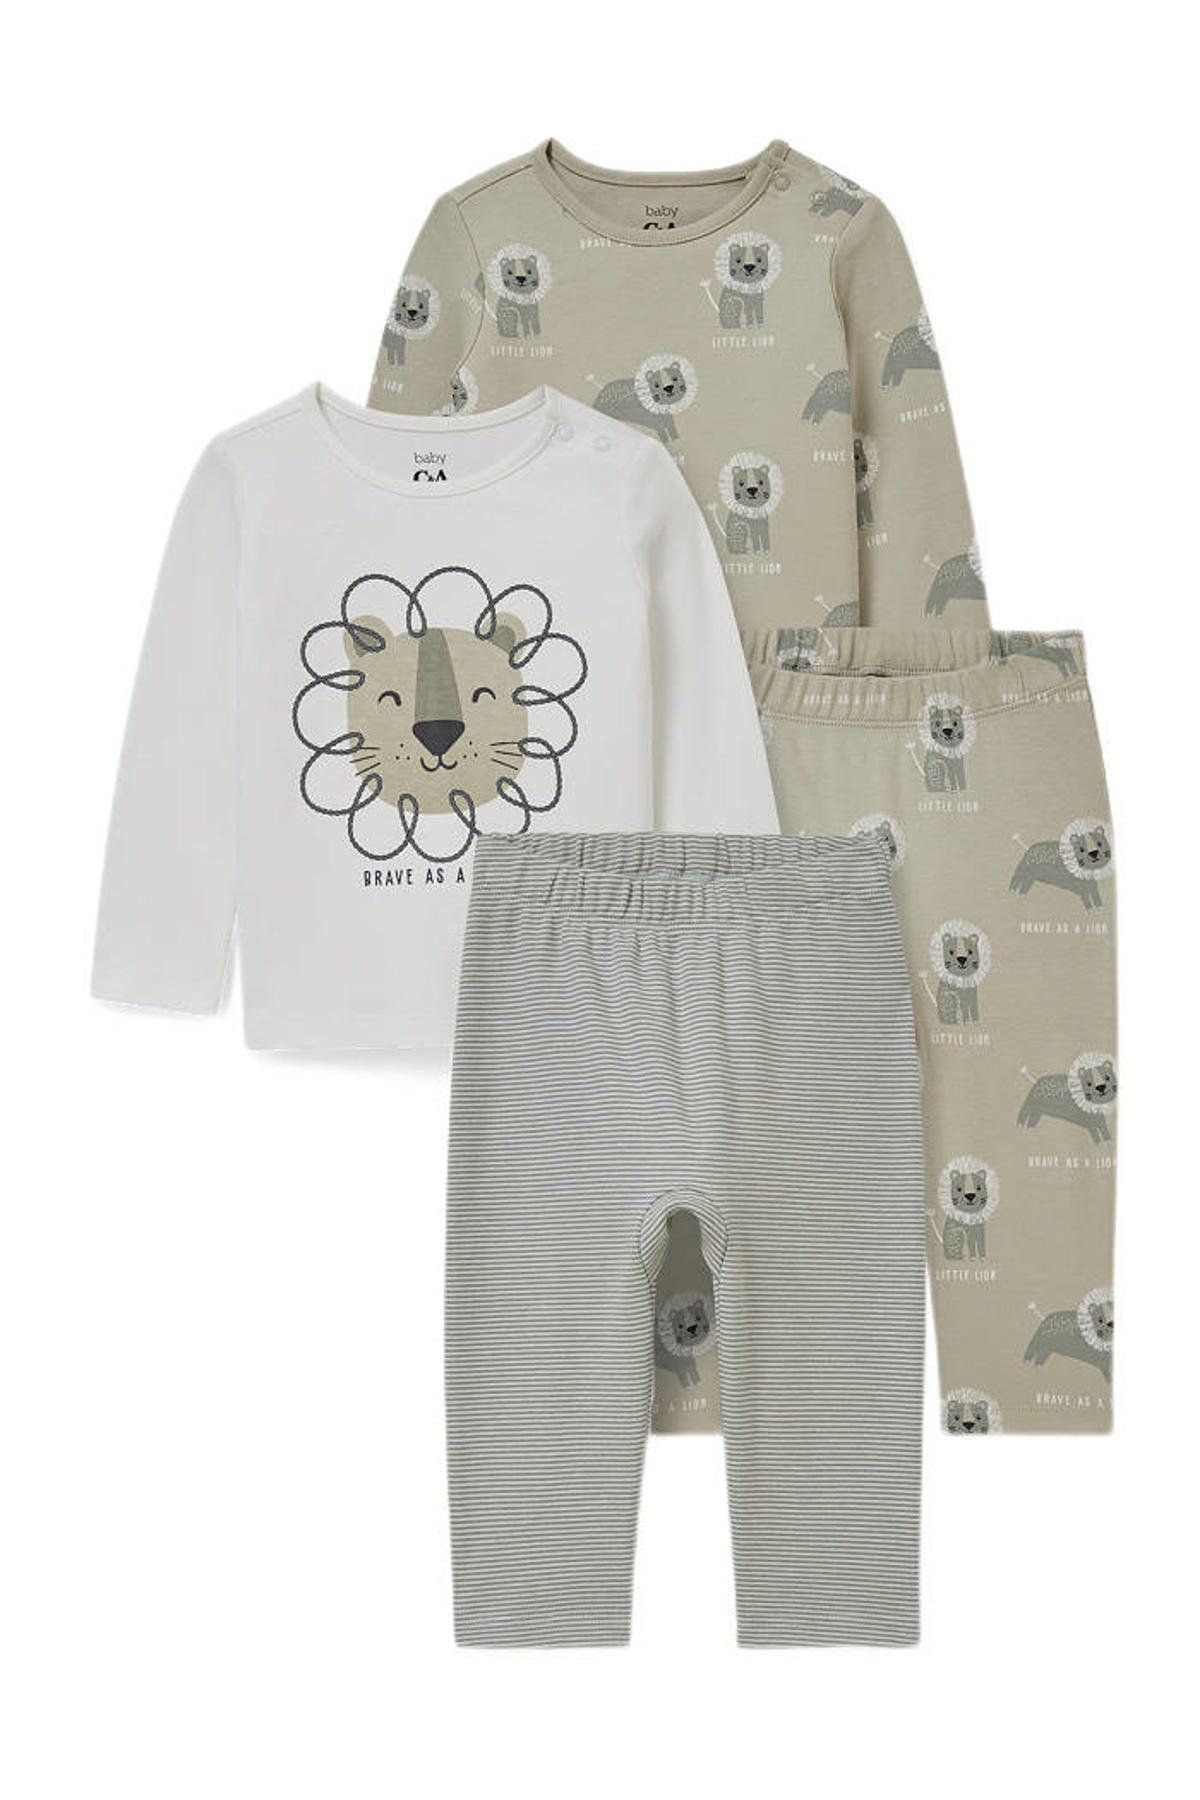 prioriteit optie Richtlijnen C&A Baby Club pyjama - set van 2 grijs/kaki | wehkamp